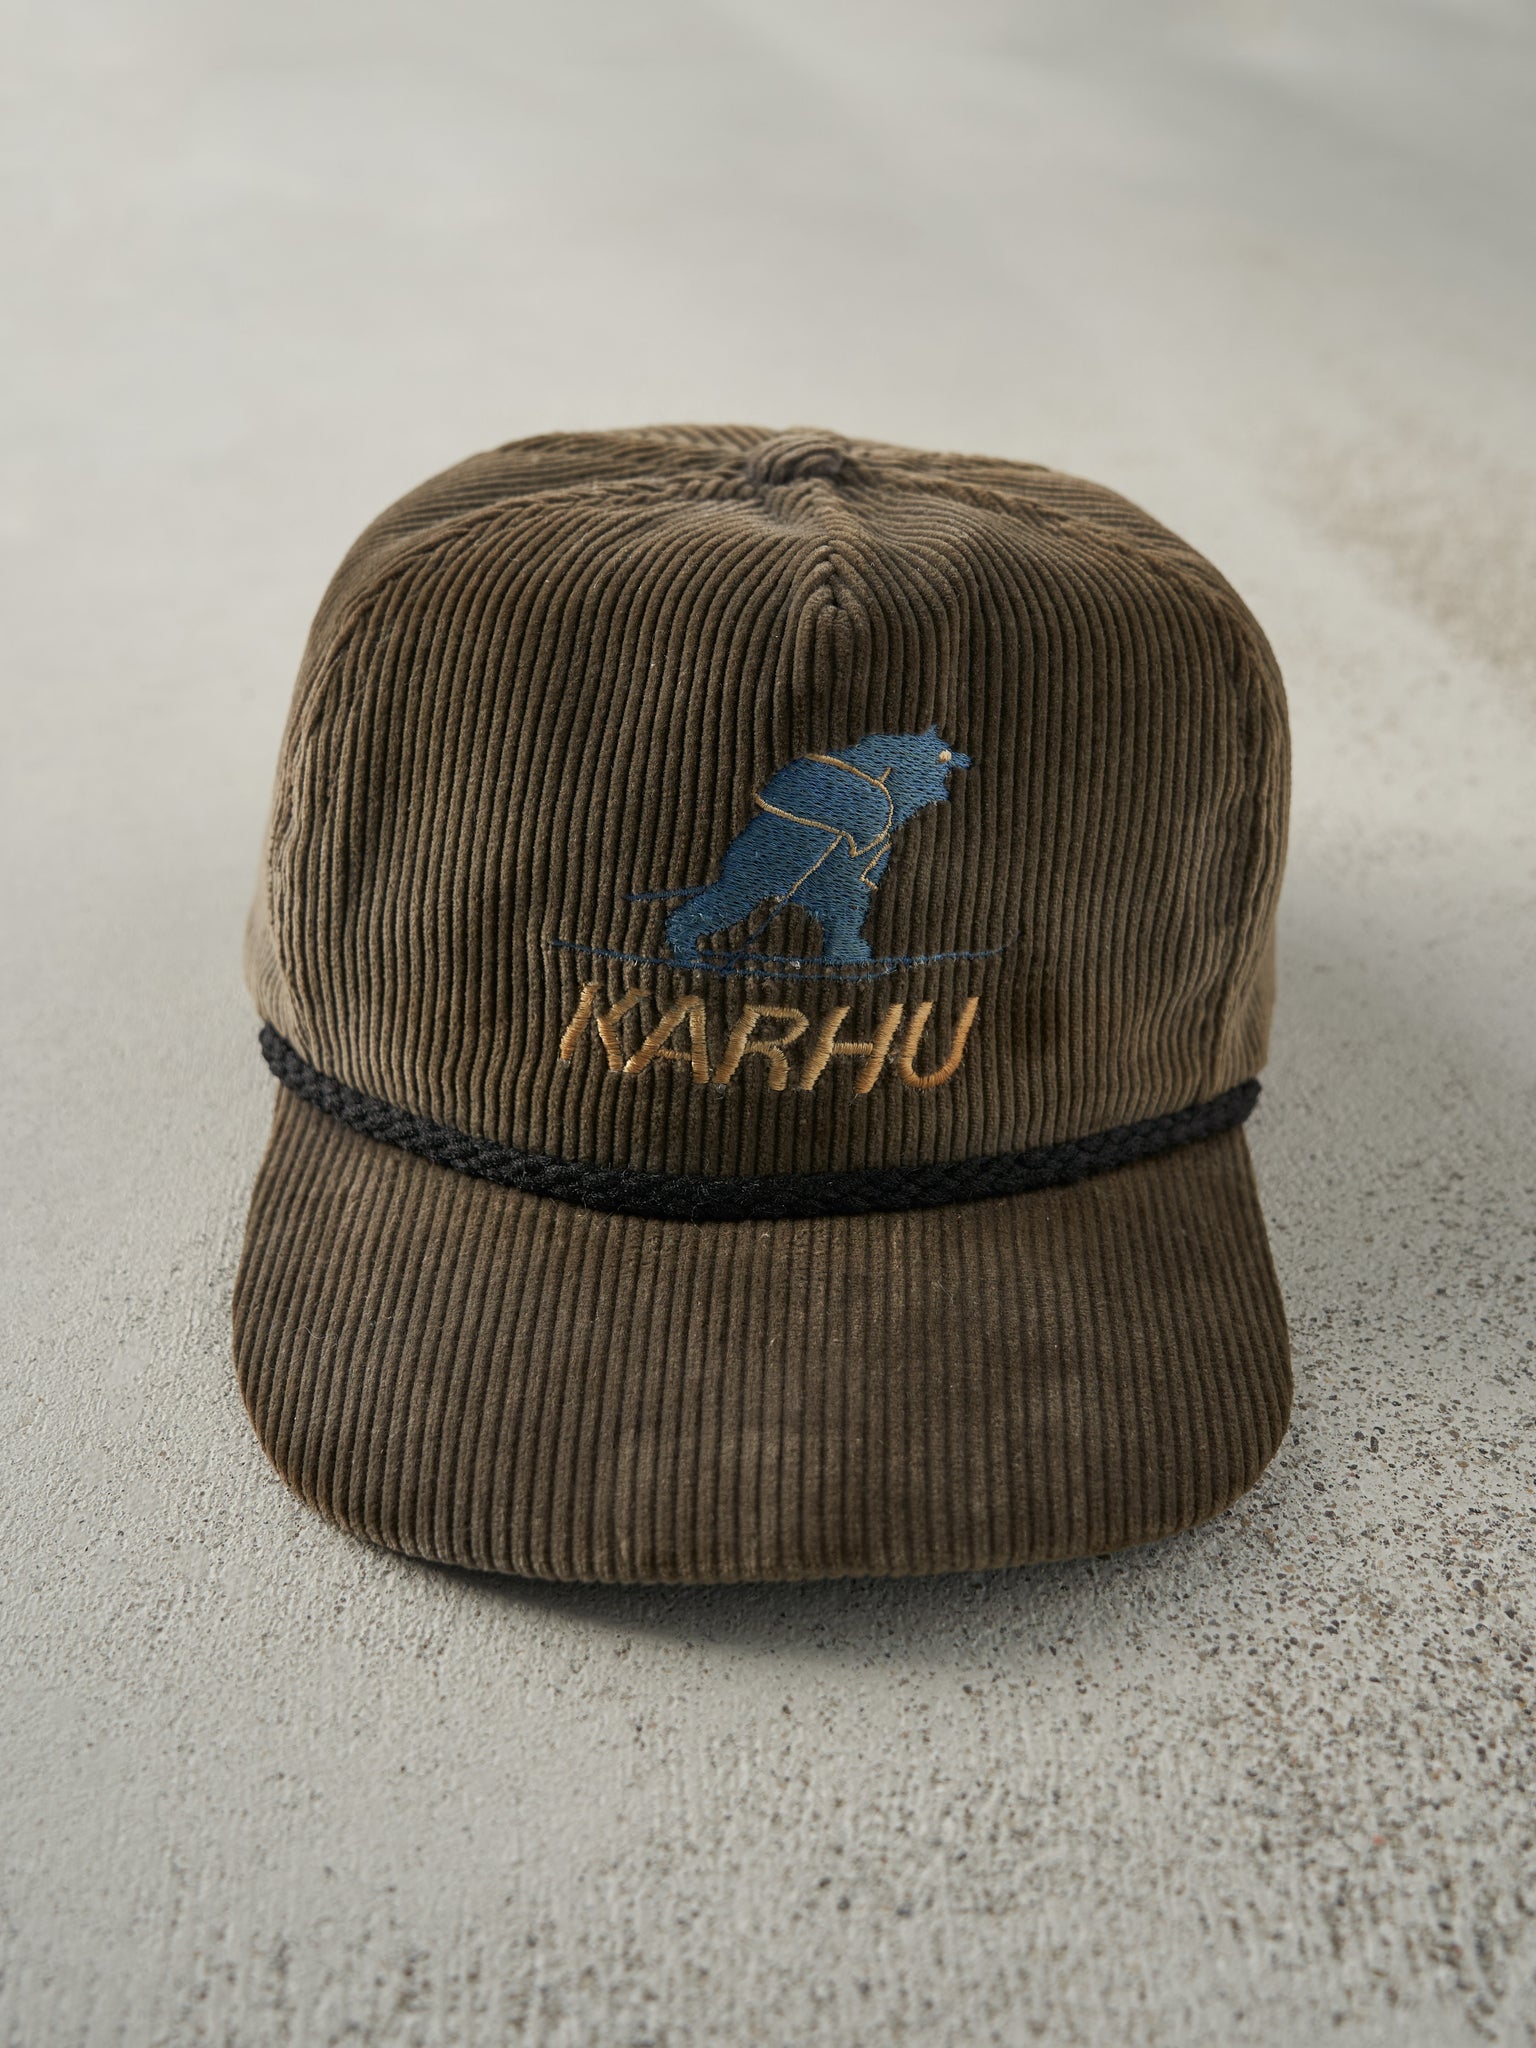 Vintage 80s Brown Embroidered Karhu Corduroy Leather Strap Back Hat